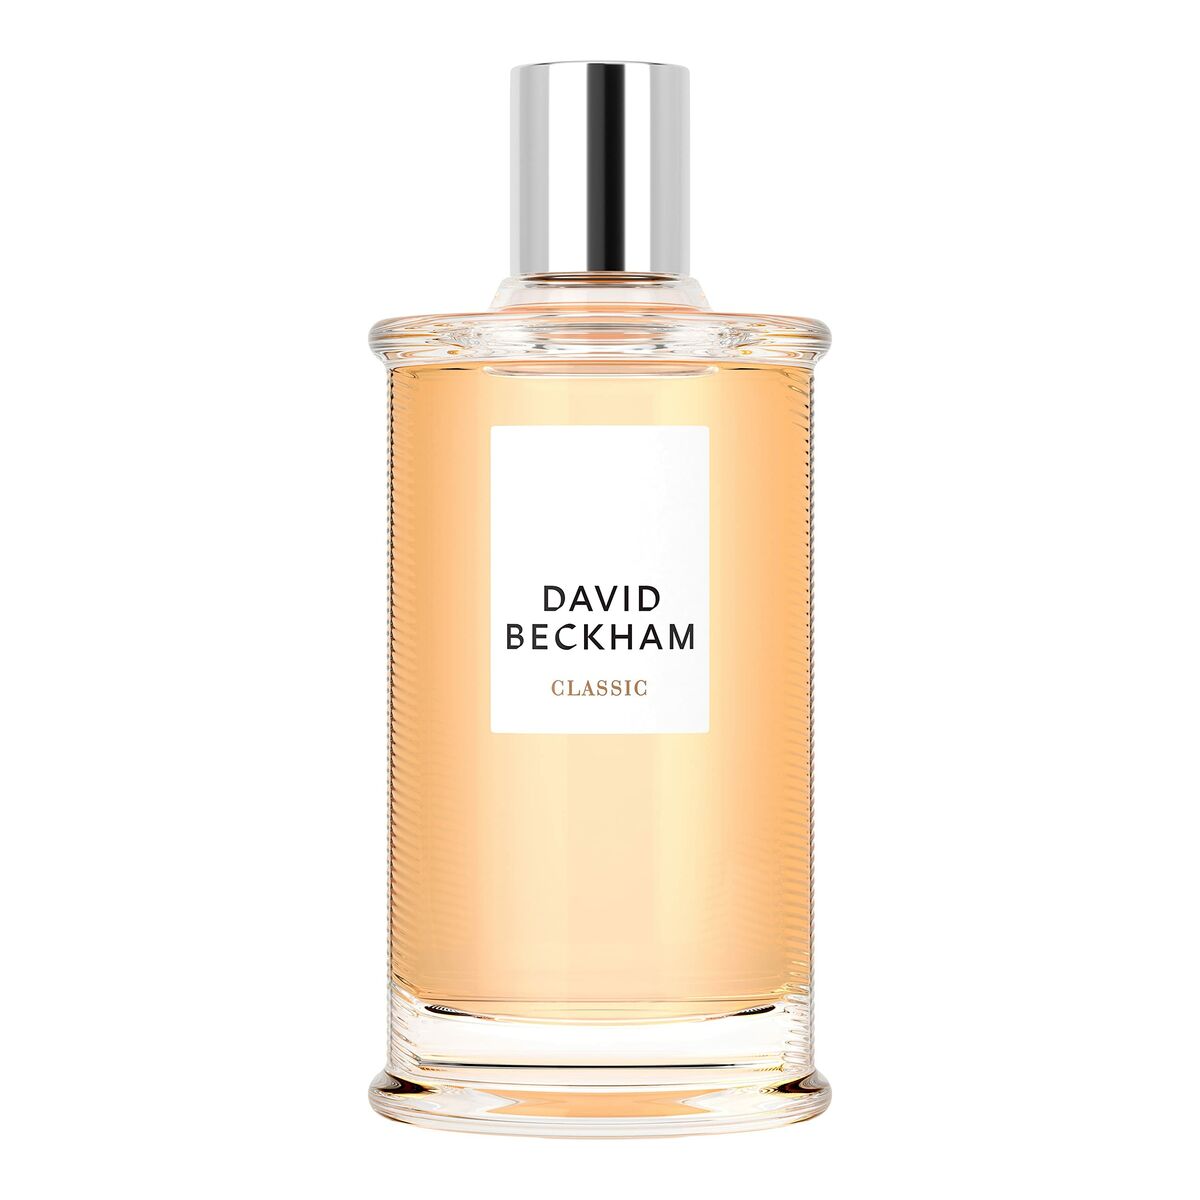 Parfum masculin David Beckham Edt Classic 100 ml